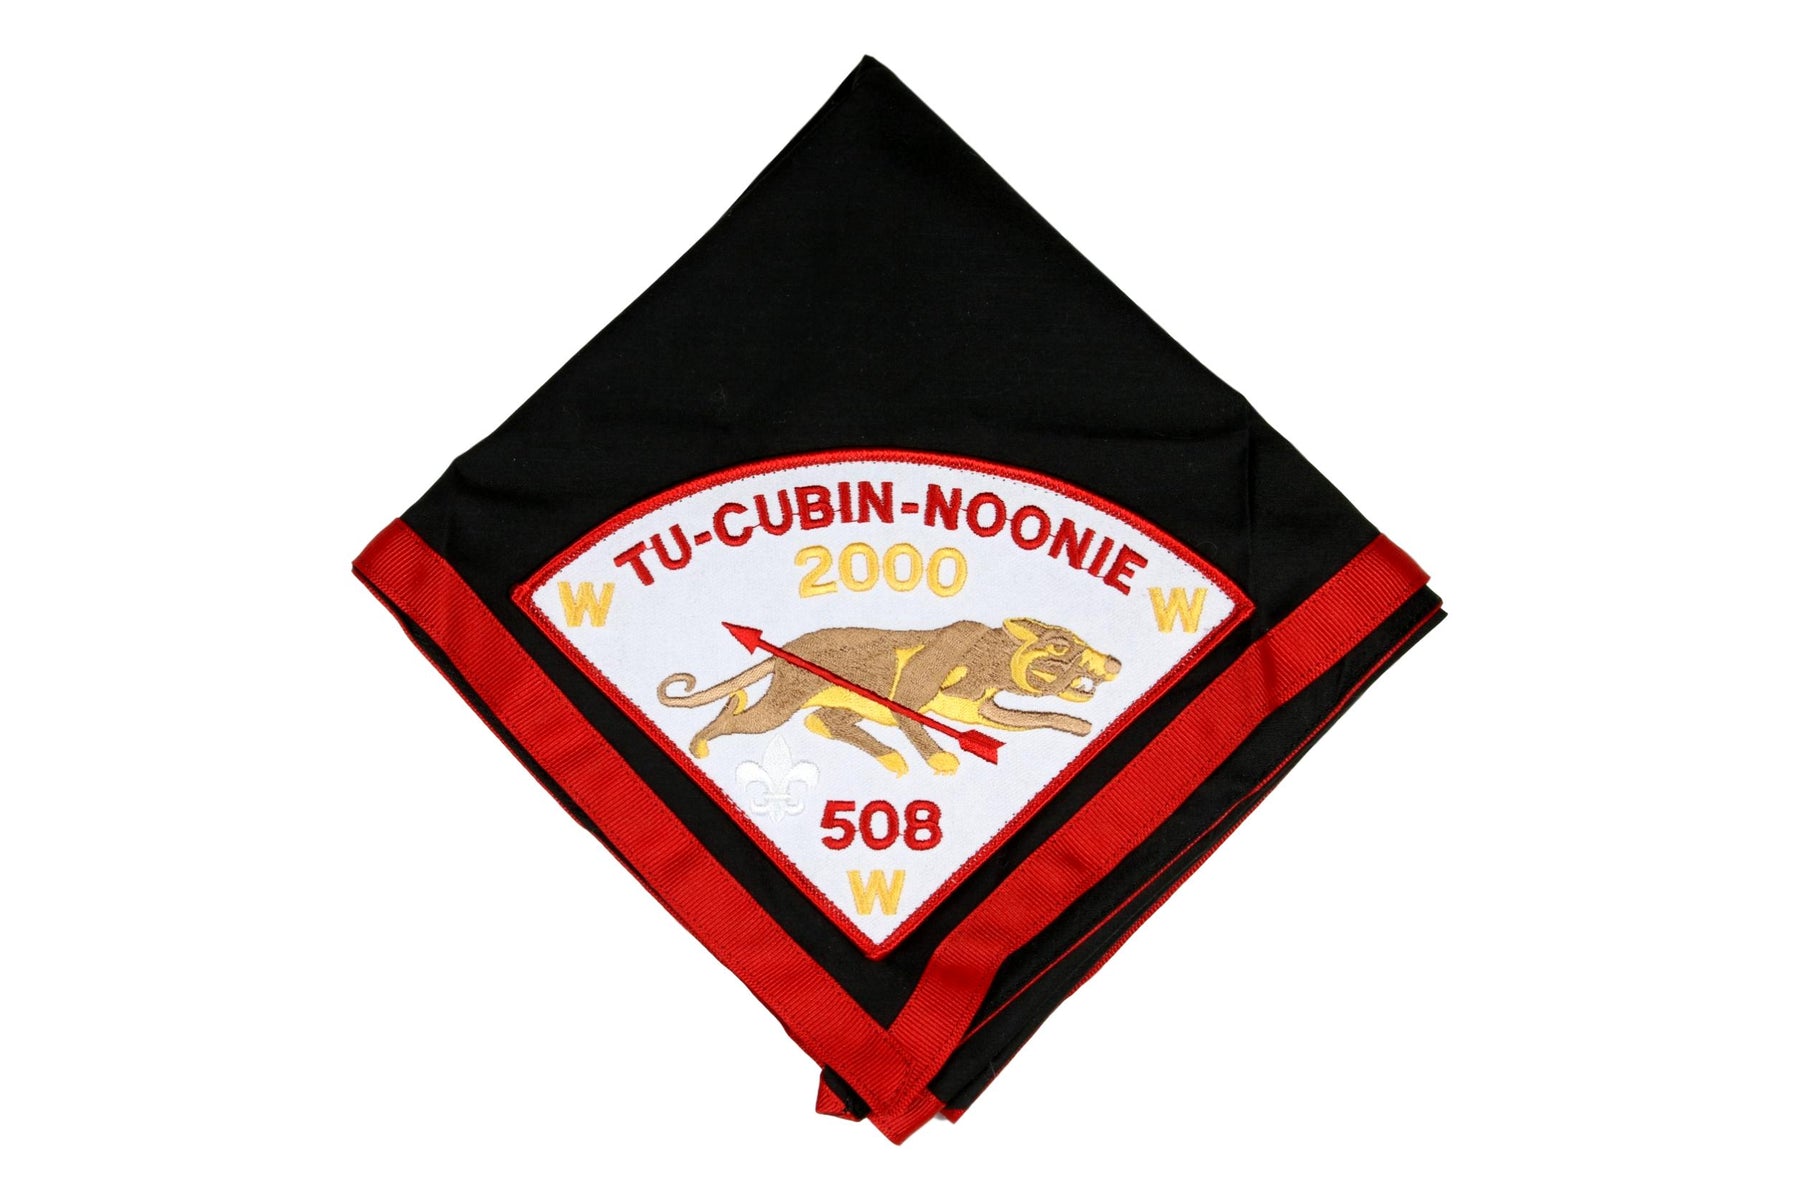 Lodge 508 Tu-Cubin-Noonie Neckerchief 2000